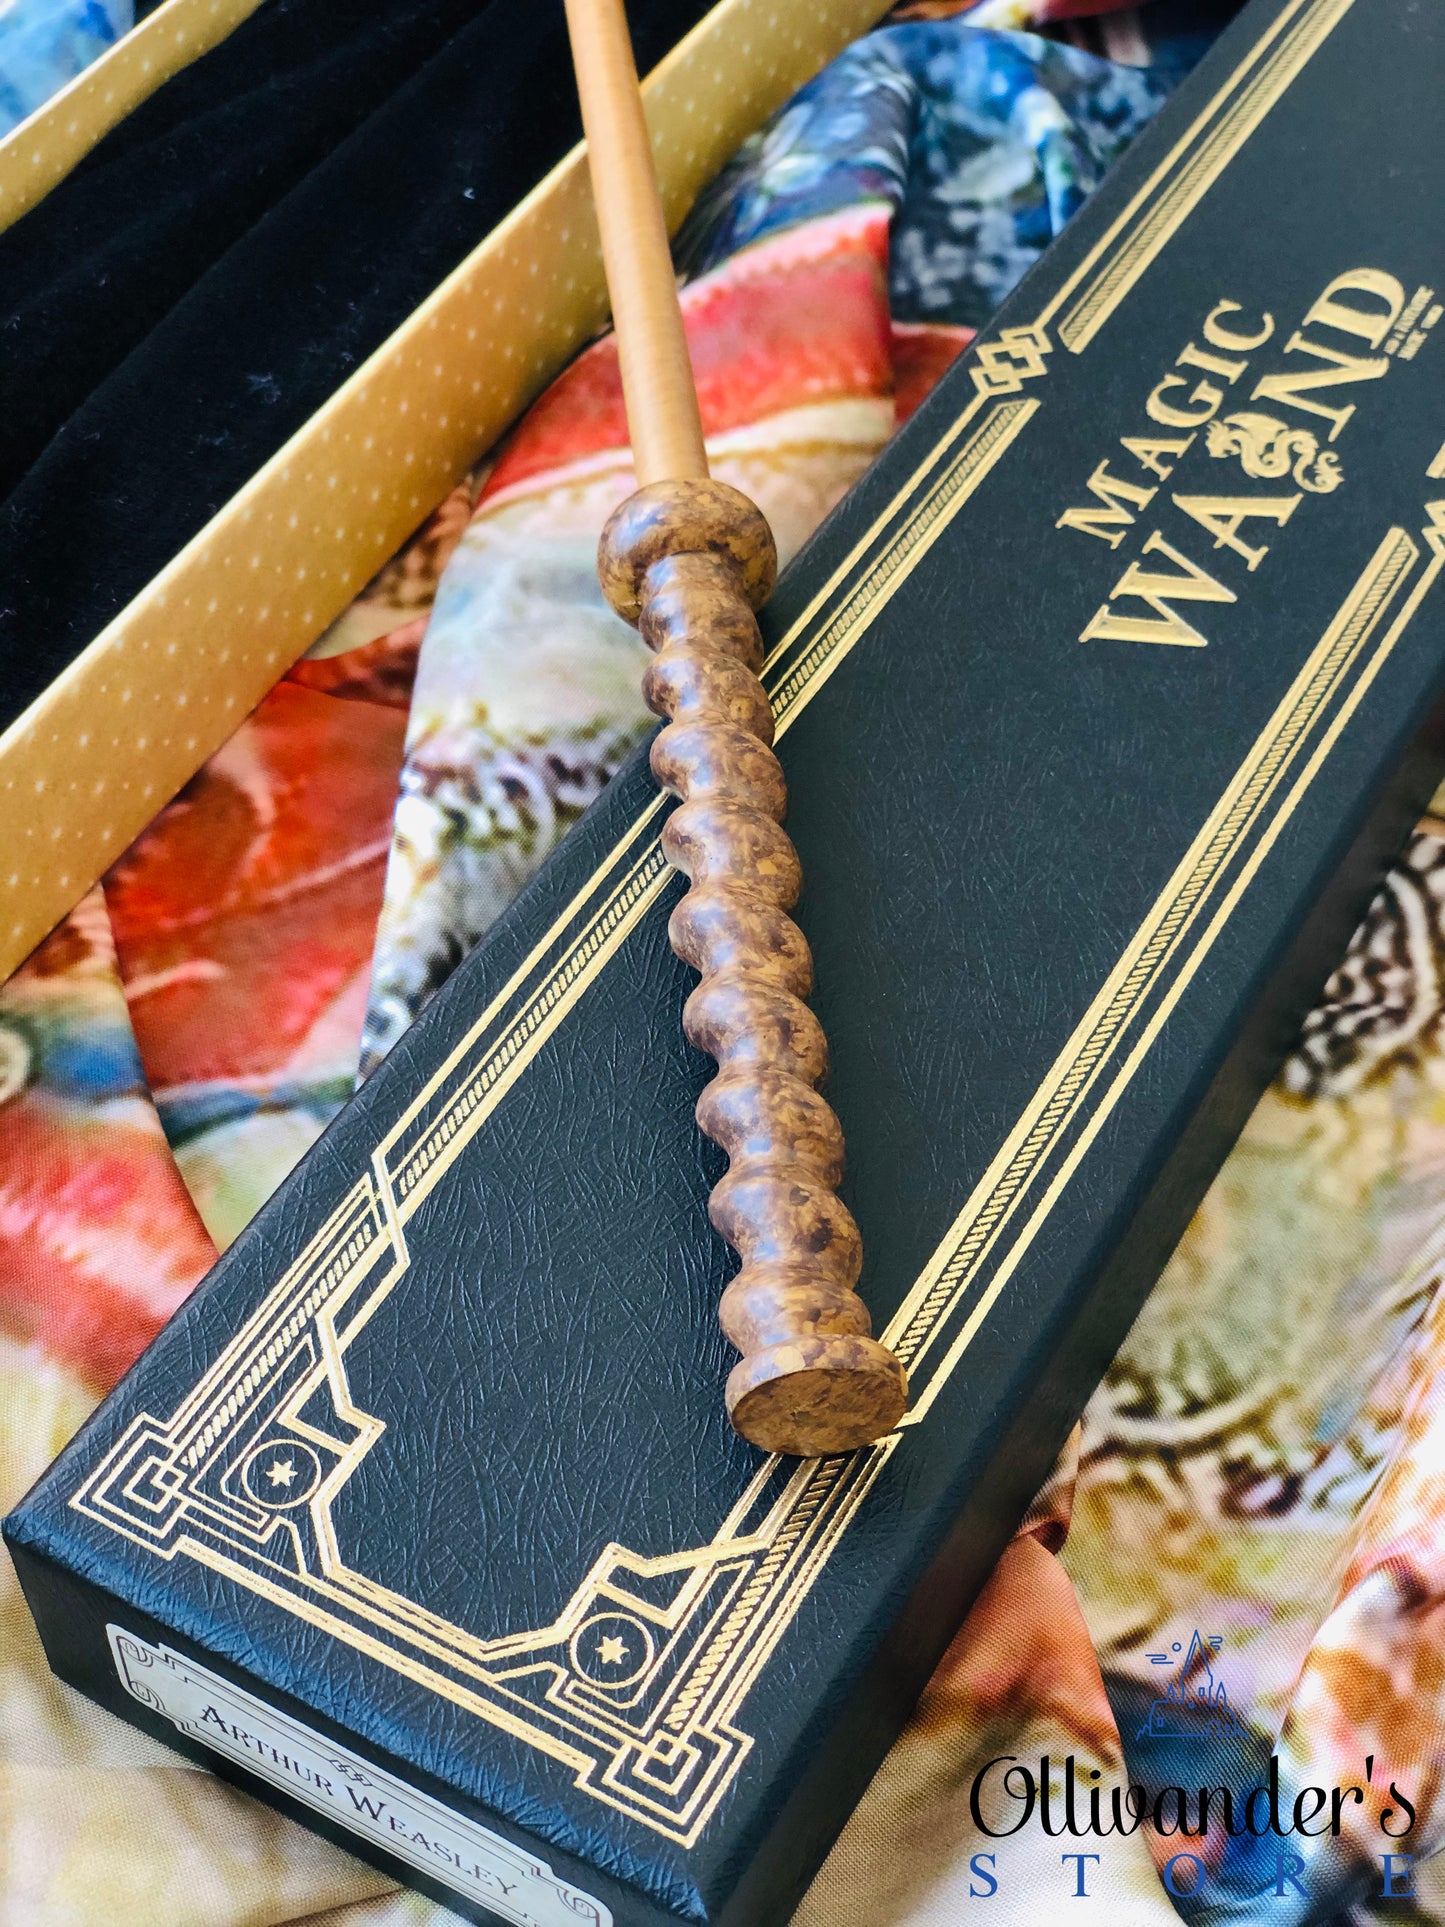 Arthur Weasley's Magic wand